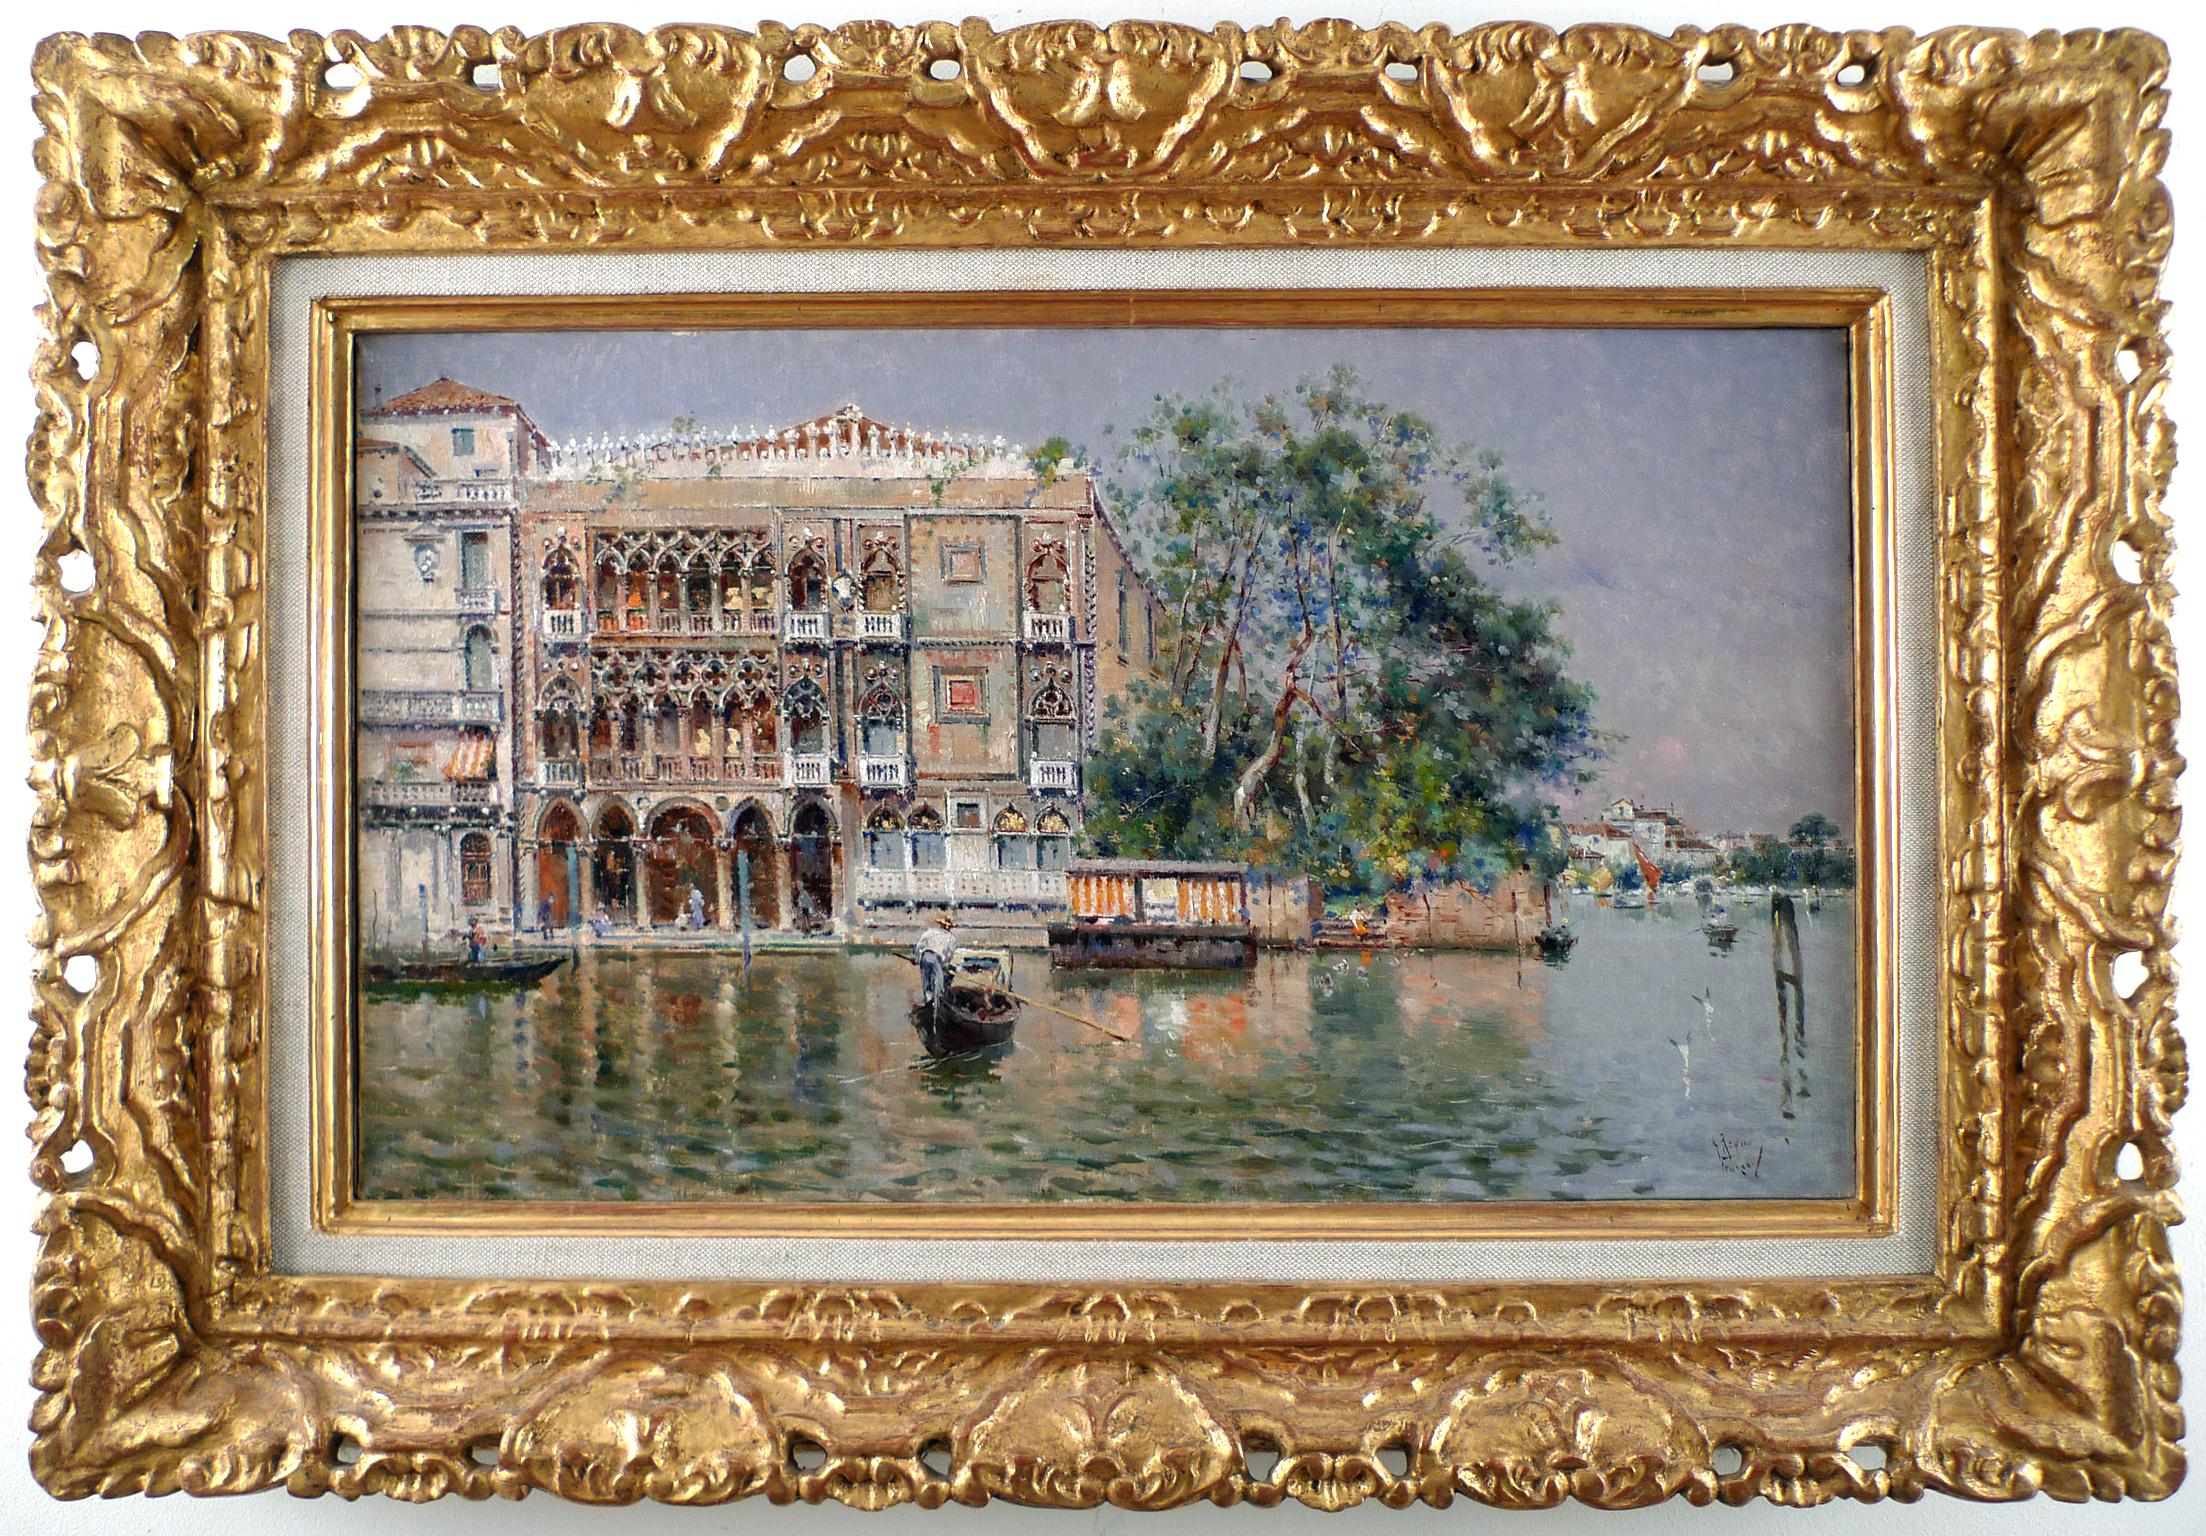 « Ca' d' Oro, Venise », huile sur toile de la fin du XIXe siècle représentant Venise, par Antonio Reyna - Painting de Antonio Reyna Manescau